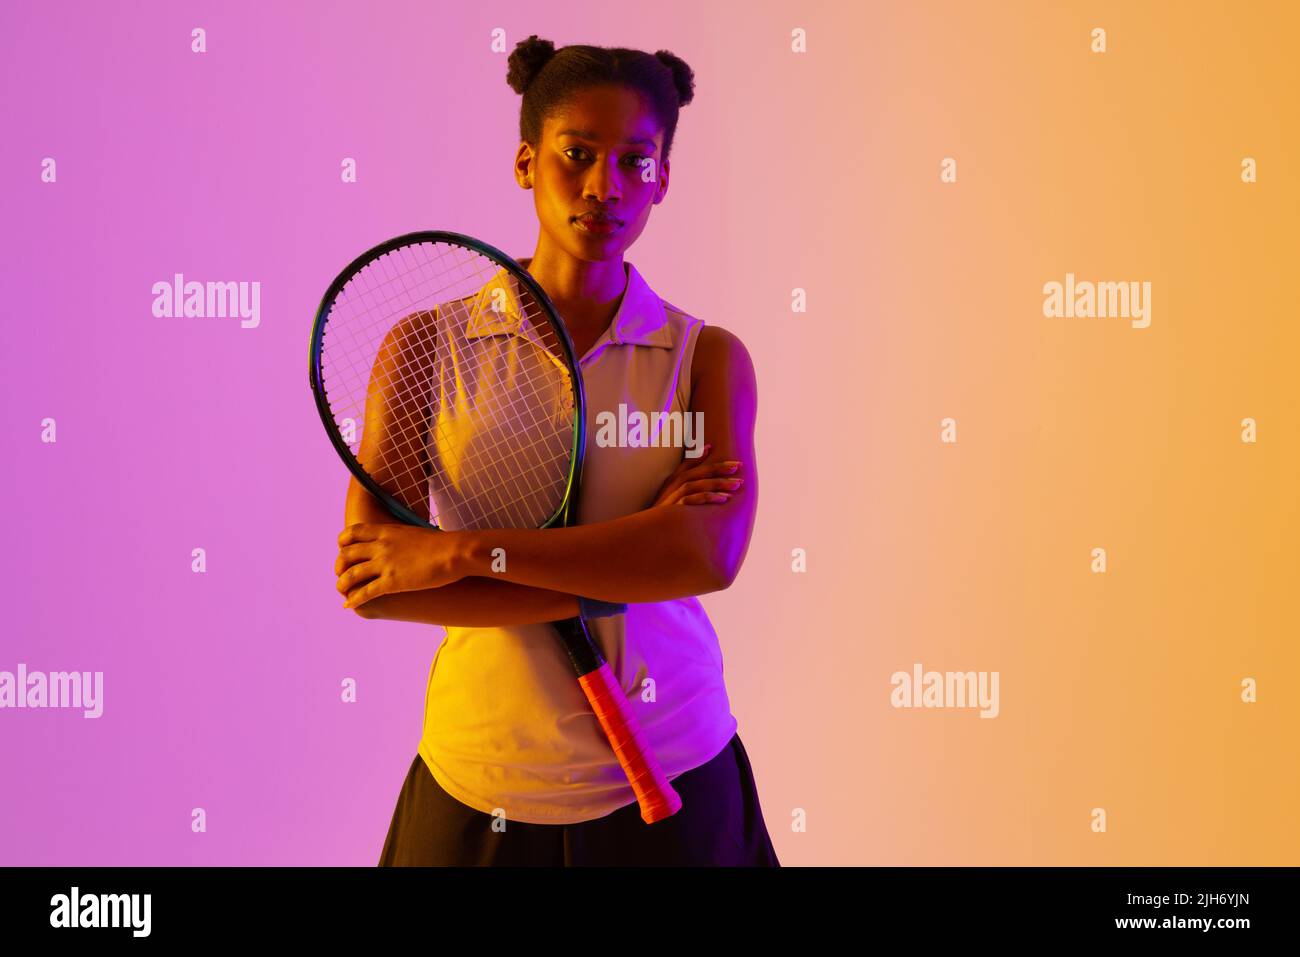 Image d'une joueuse de tennis afro-américaine dans un éclairage violet et jaune fluo Banque D'Images